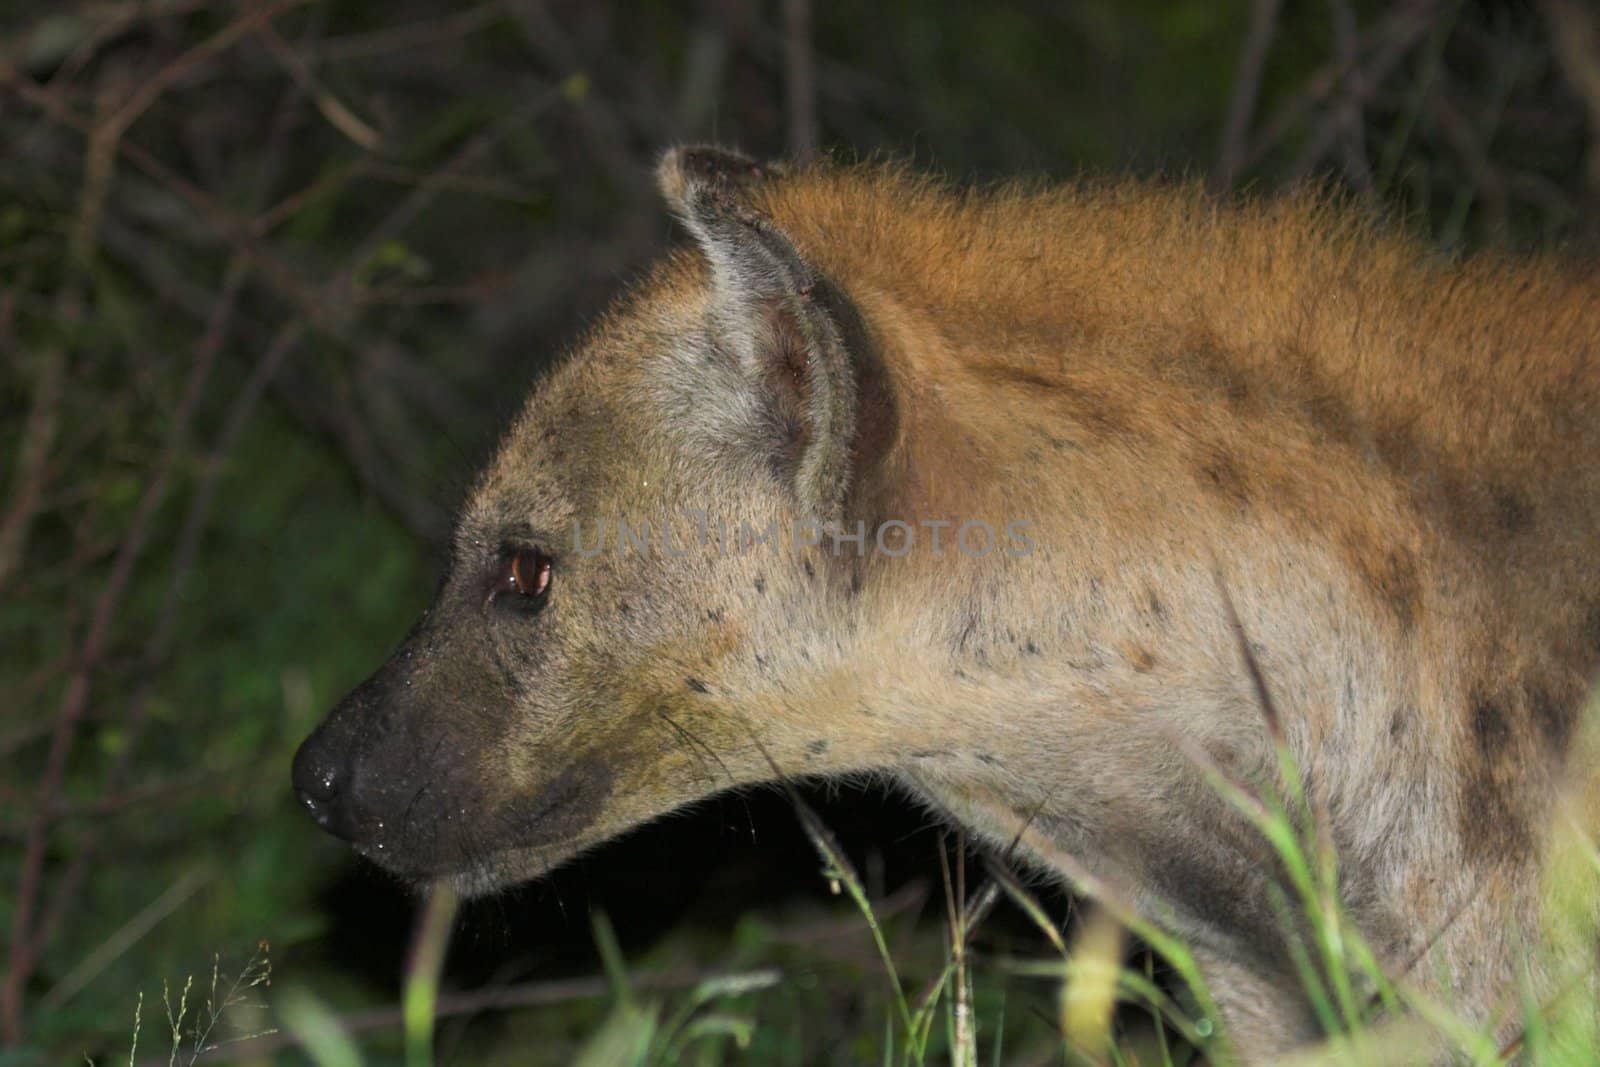 Hyena by nightowlza